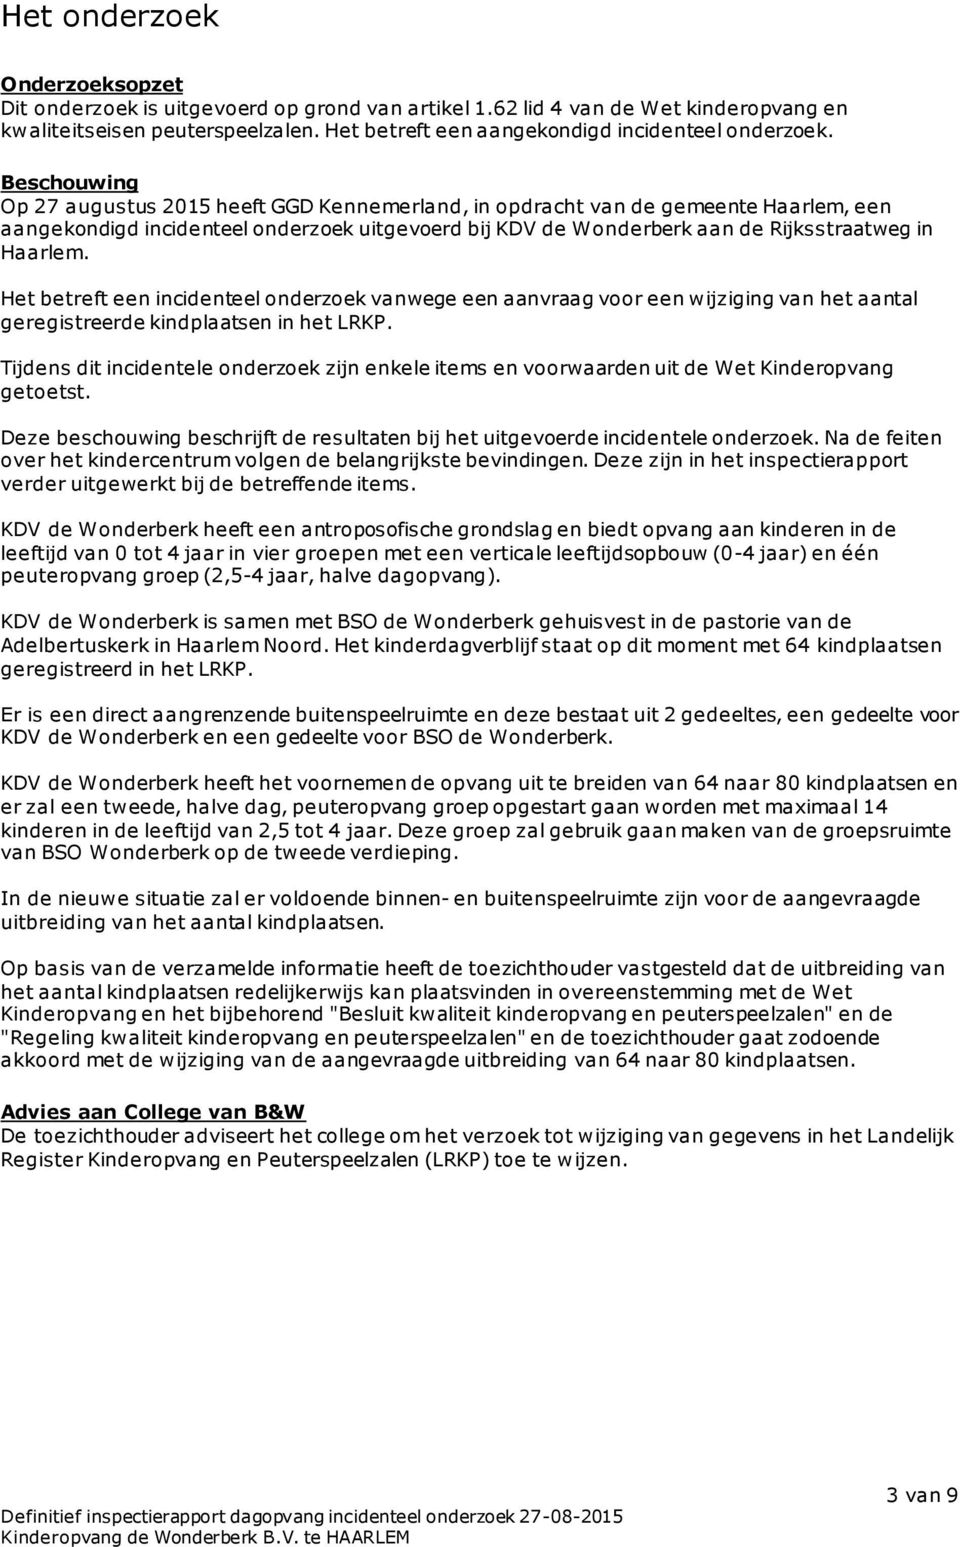 Beschouwing Op 27 augustus 2015 heeft GGD Kennemerland, in opdracht van de gemeente Haarlem, een aangekondigd incidenteel onderzoek uitgevoerd bij KDV de Wonderberk aan de Rijksstraatweg in Haarlem.